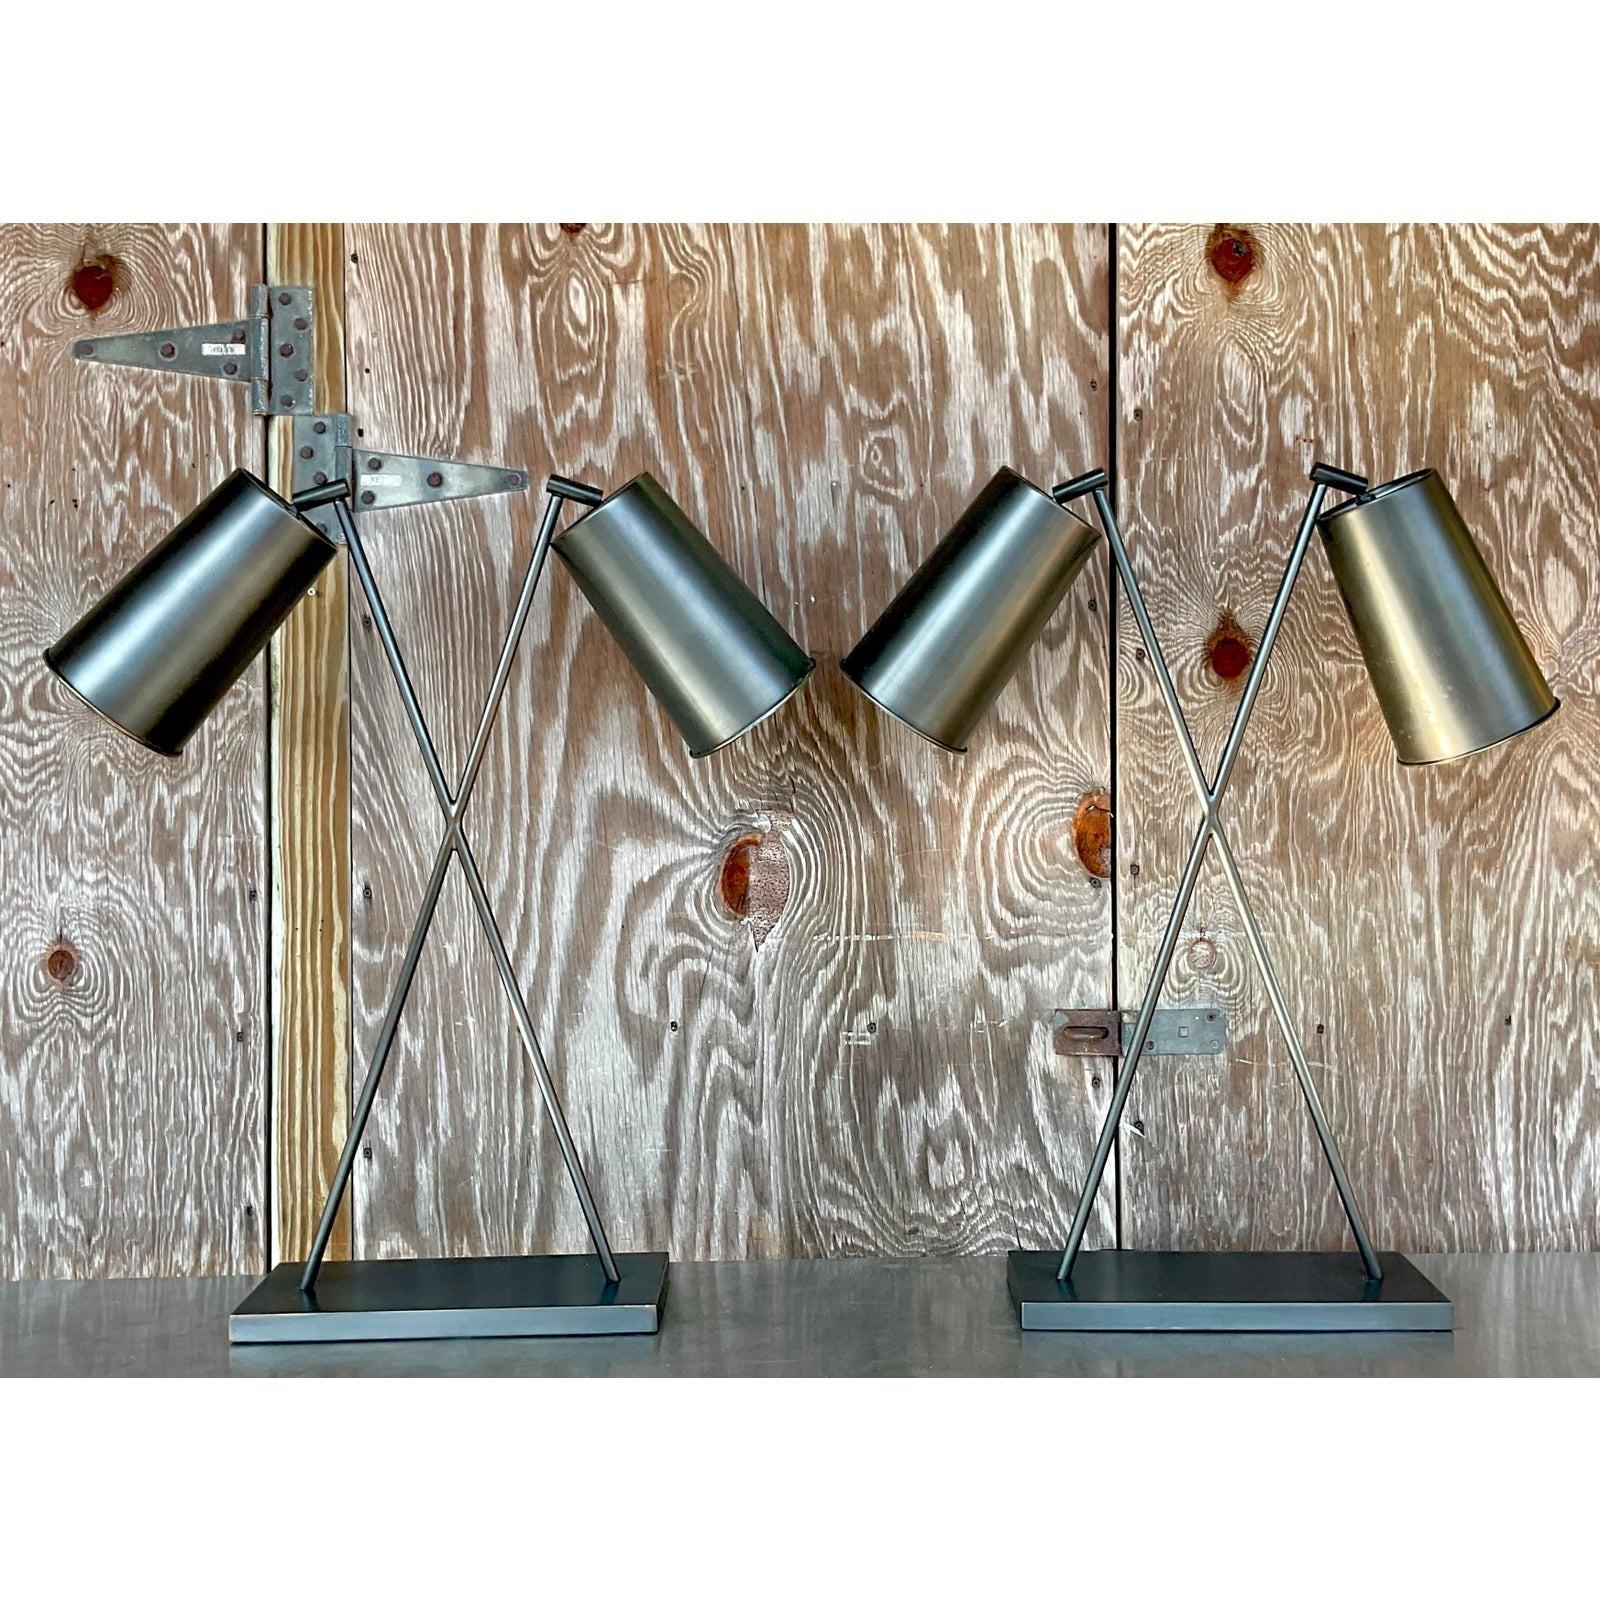 Une fabuleuse paire de lampes de table Boho vintage. Le design chic 